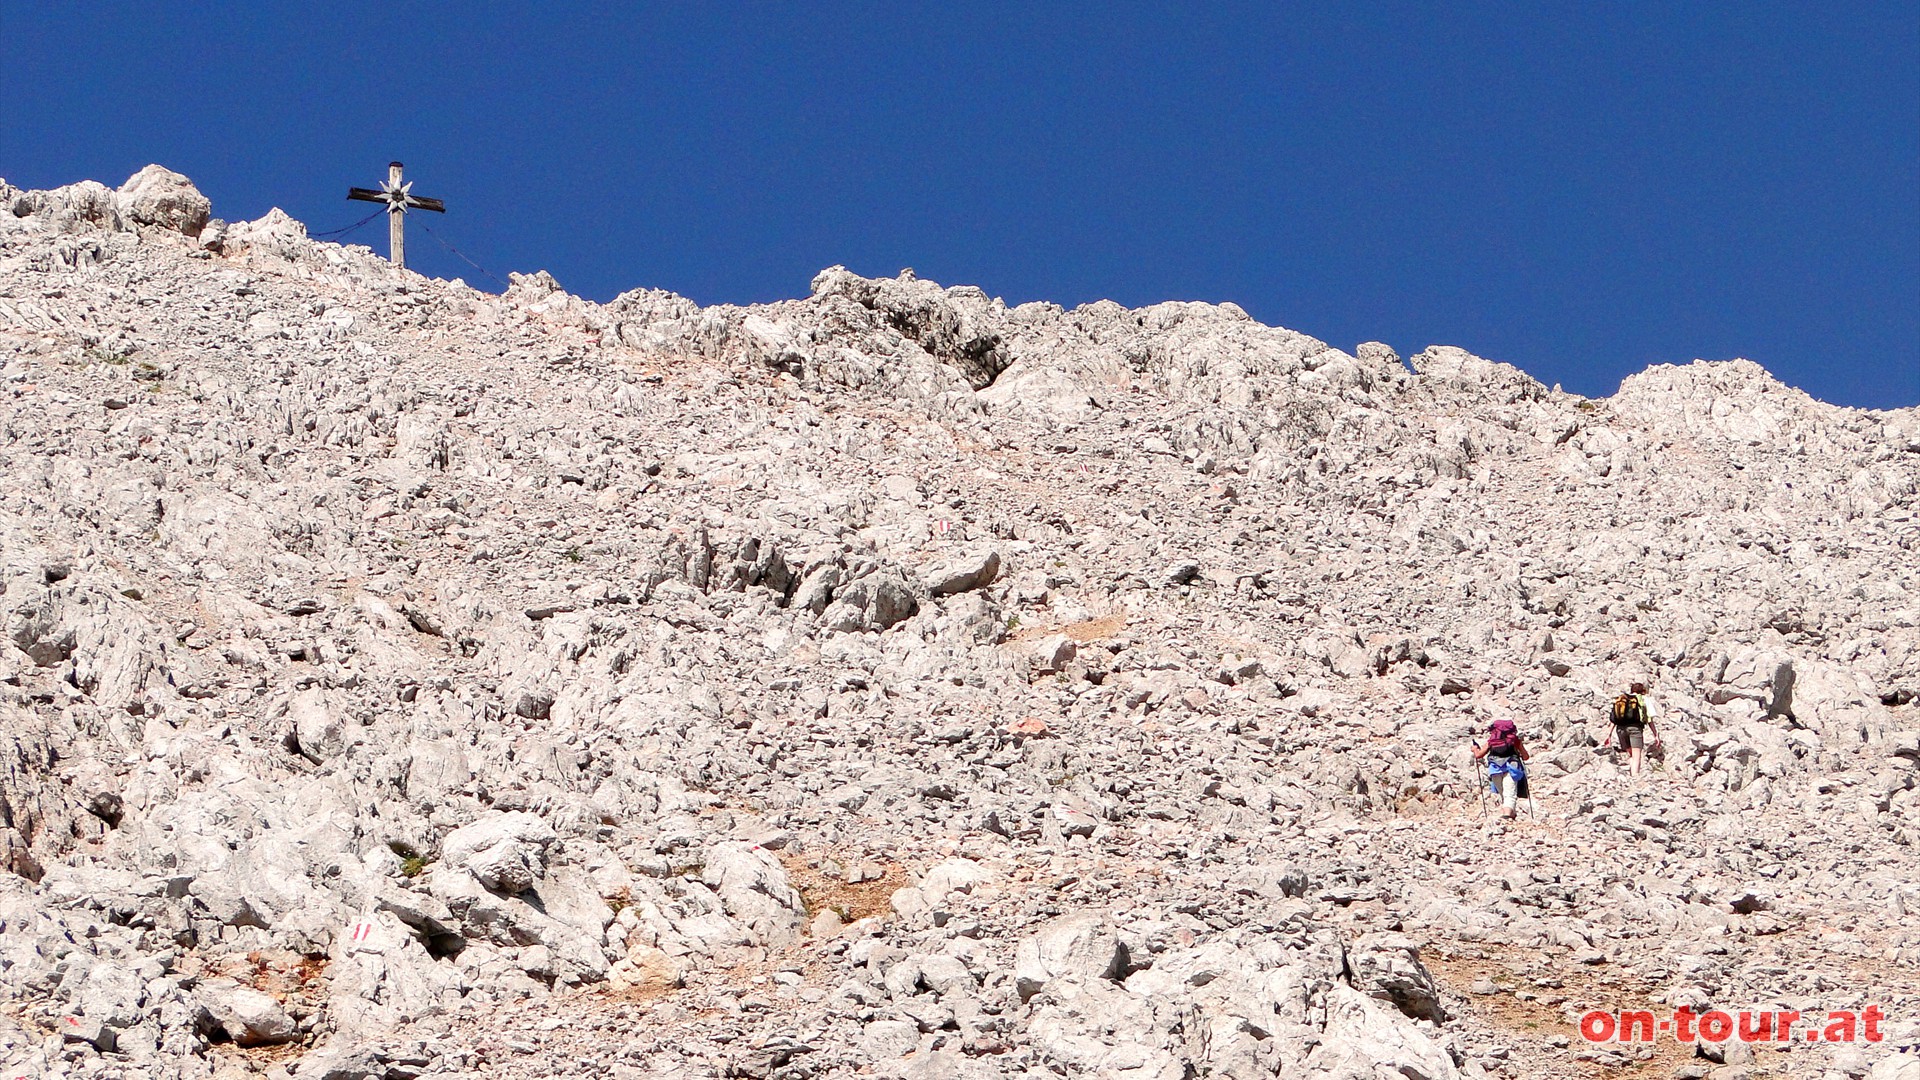 Kurze, leichte Kletterpassagen sind zu berwinden - Trittsicherheit und Schwindelfreiheit!